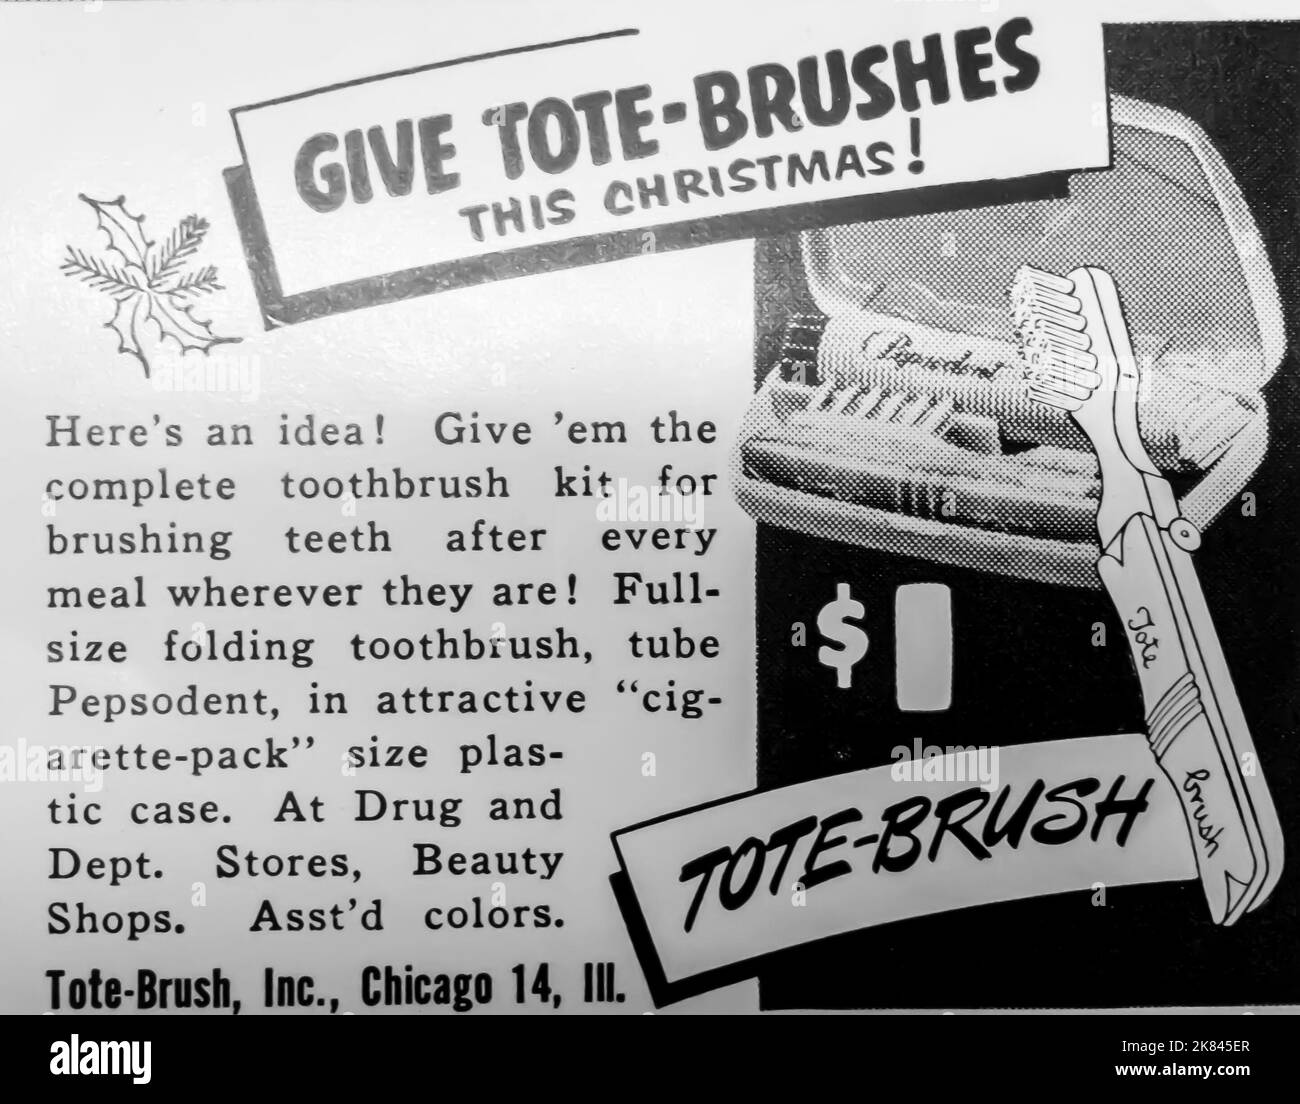 Publicité pour brosse à dents Tote-Brush dans un magazine NatGeo, 1954 Banque D'Images